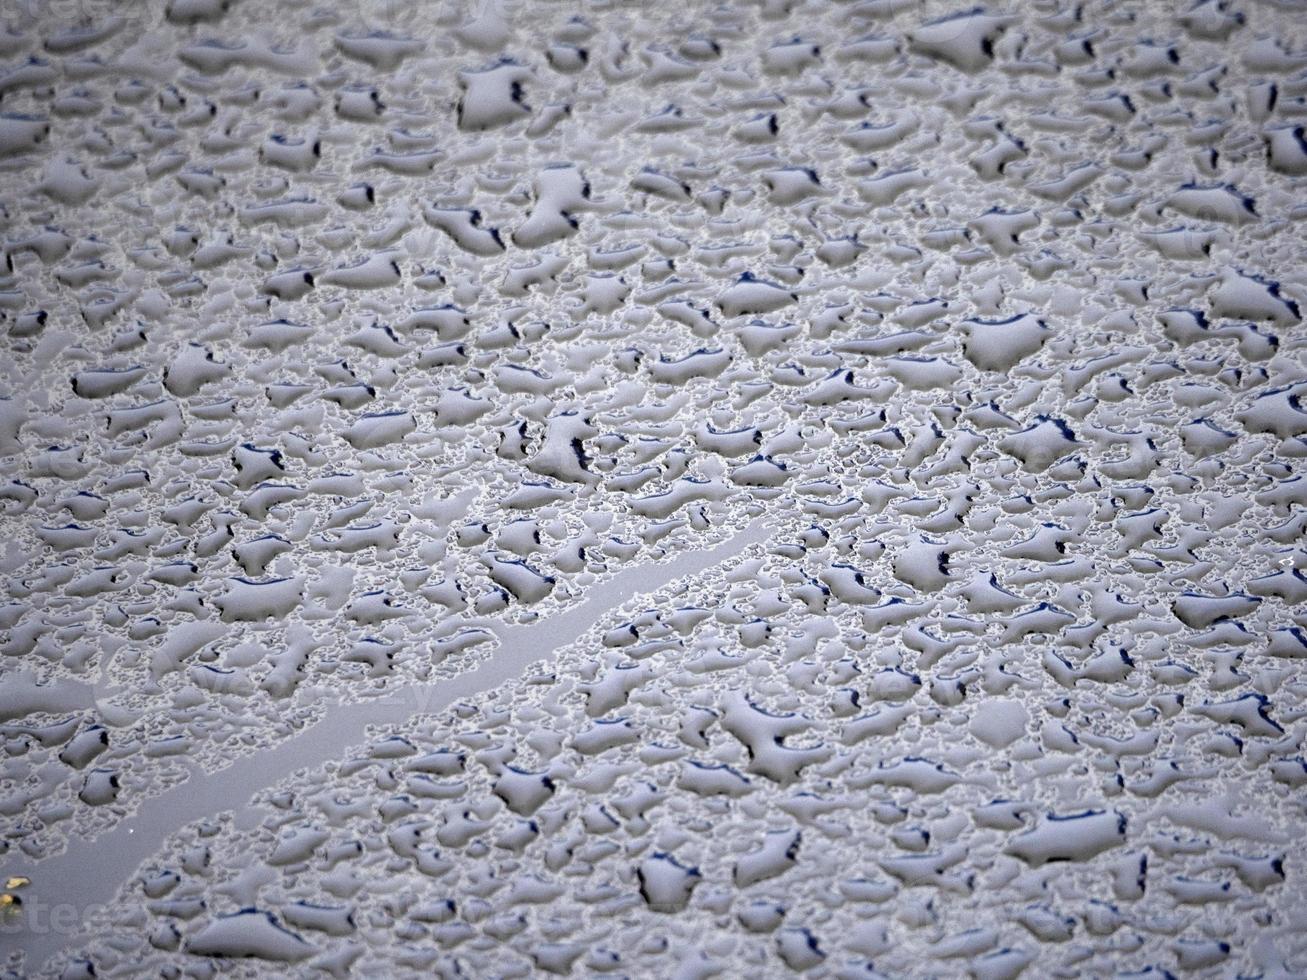 regen druppels Aan blauw metaal dichtbij omhoog macro foto